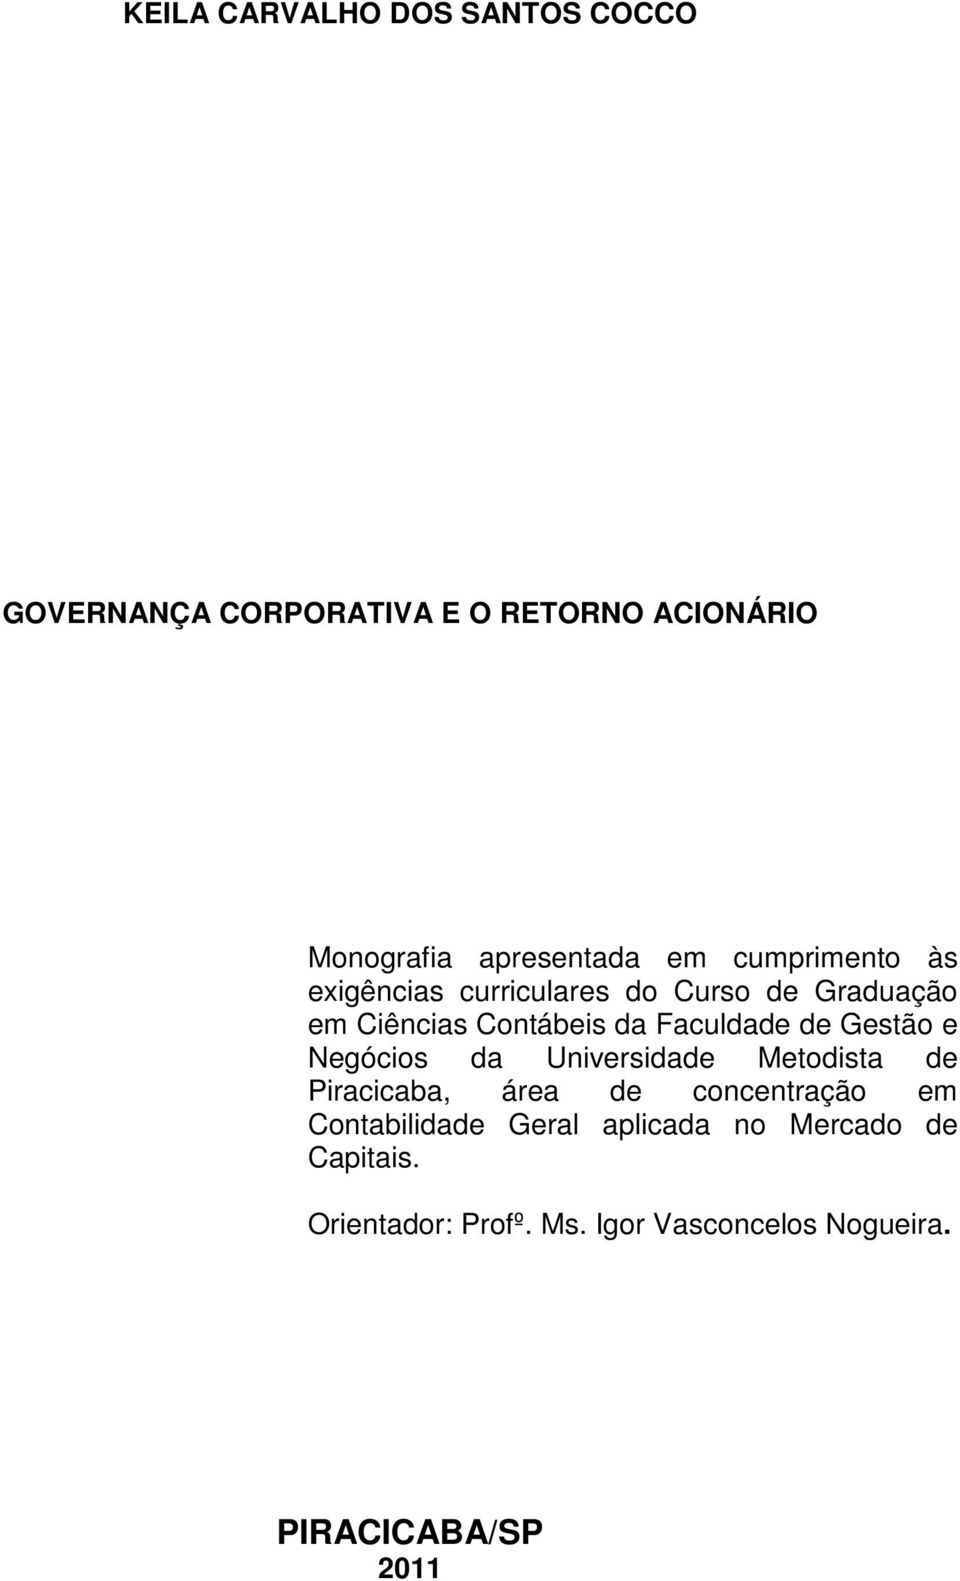 Gestão e Negócios da Universidade Metodista de Piracicaba, área de concentração em Contabilidade